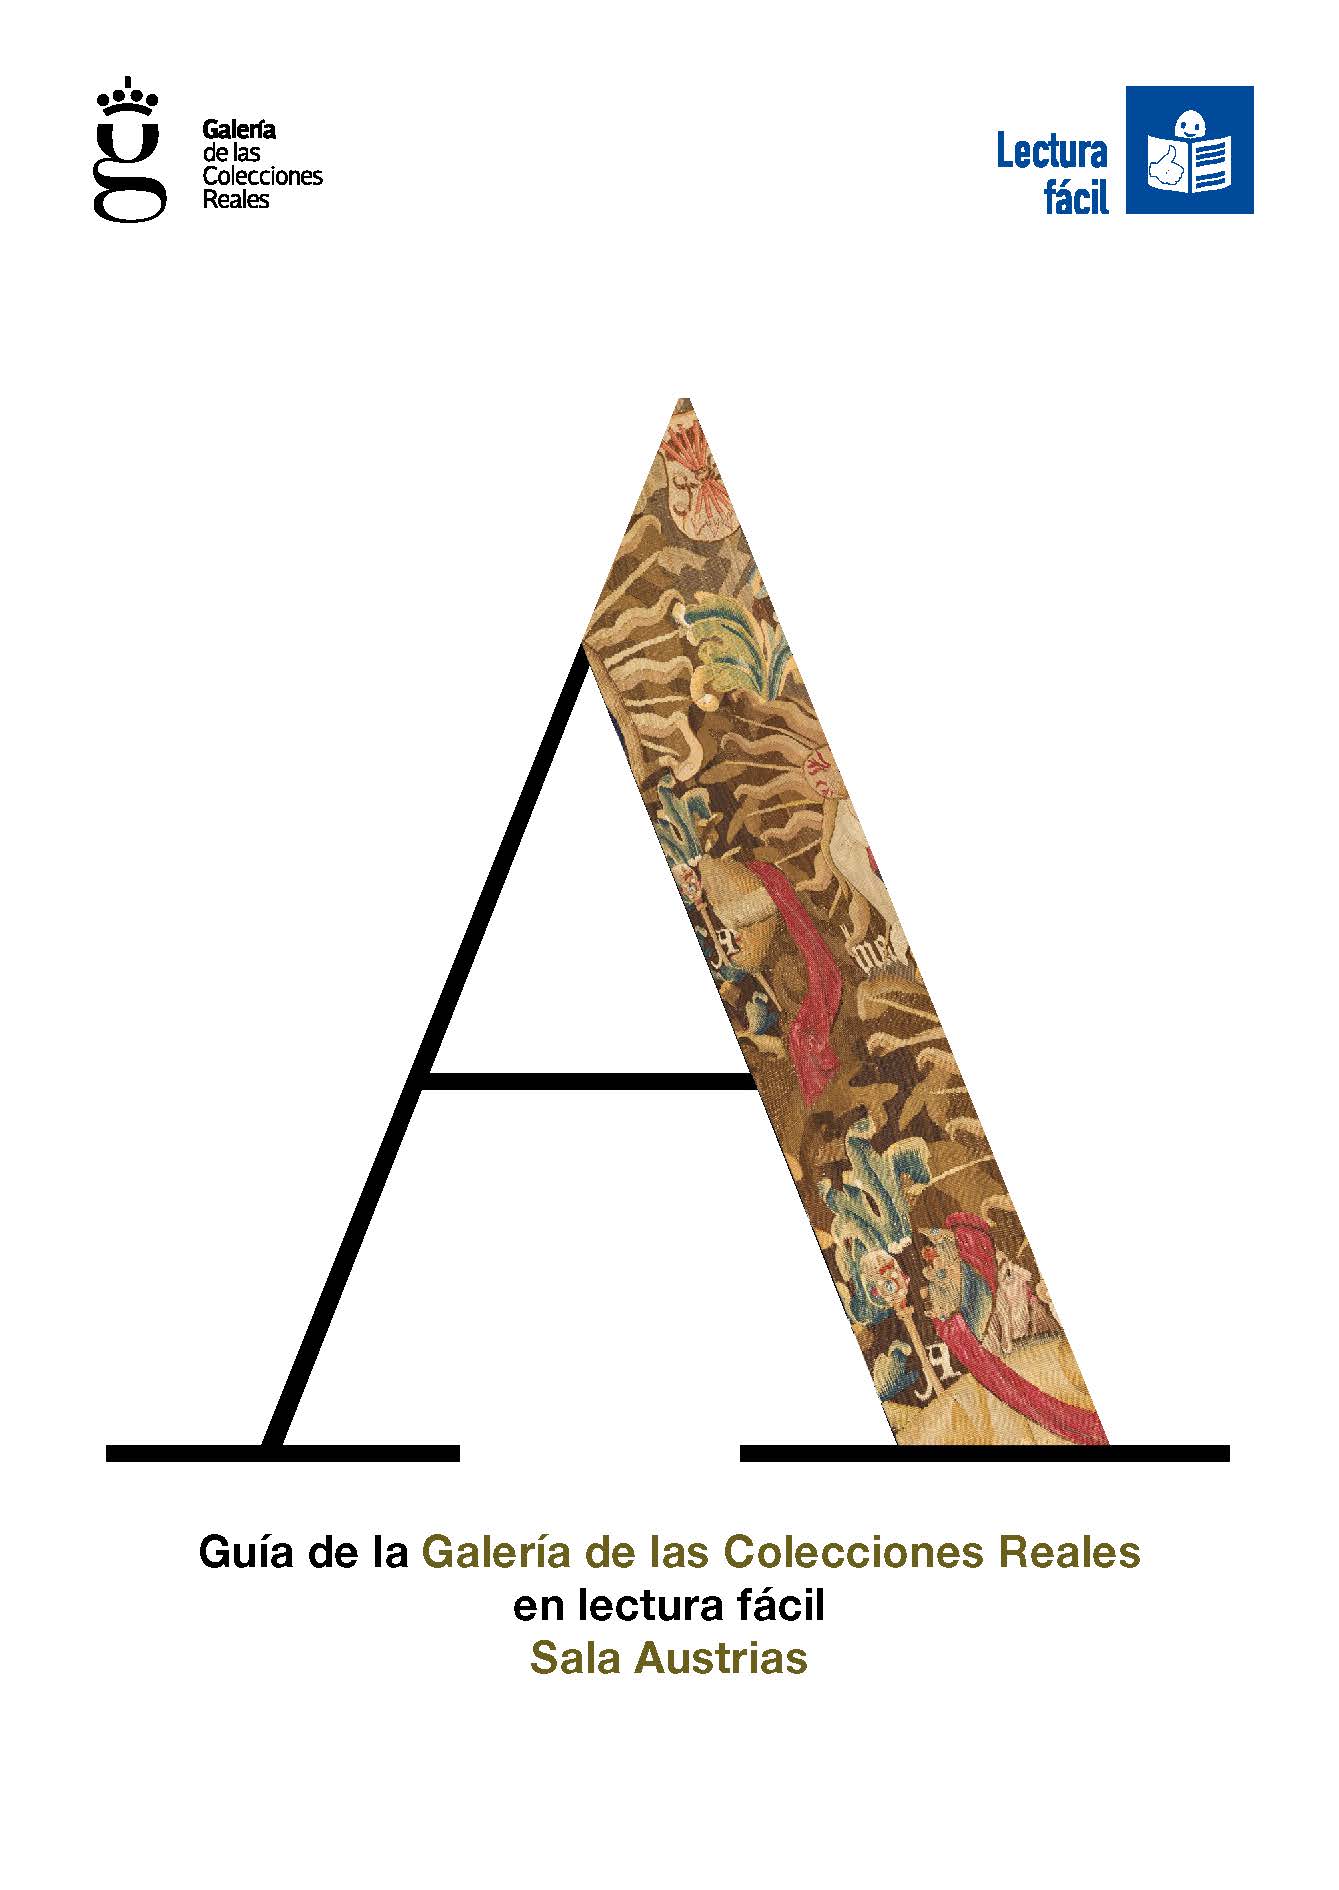 Imagen noticia Portada de la publicación Guía de la Galería de las Colecciones Reales – Sala Austrias. En lectura fácil